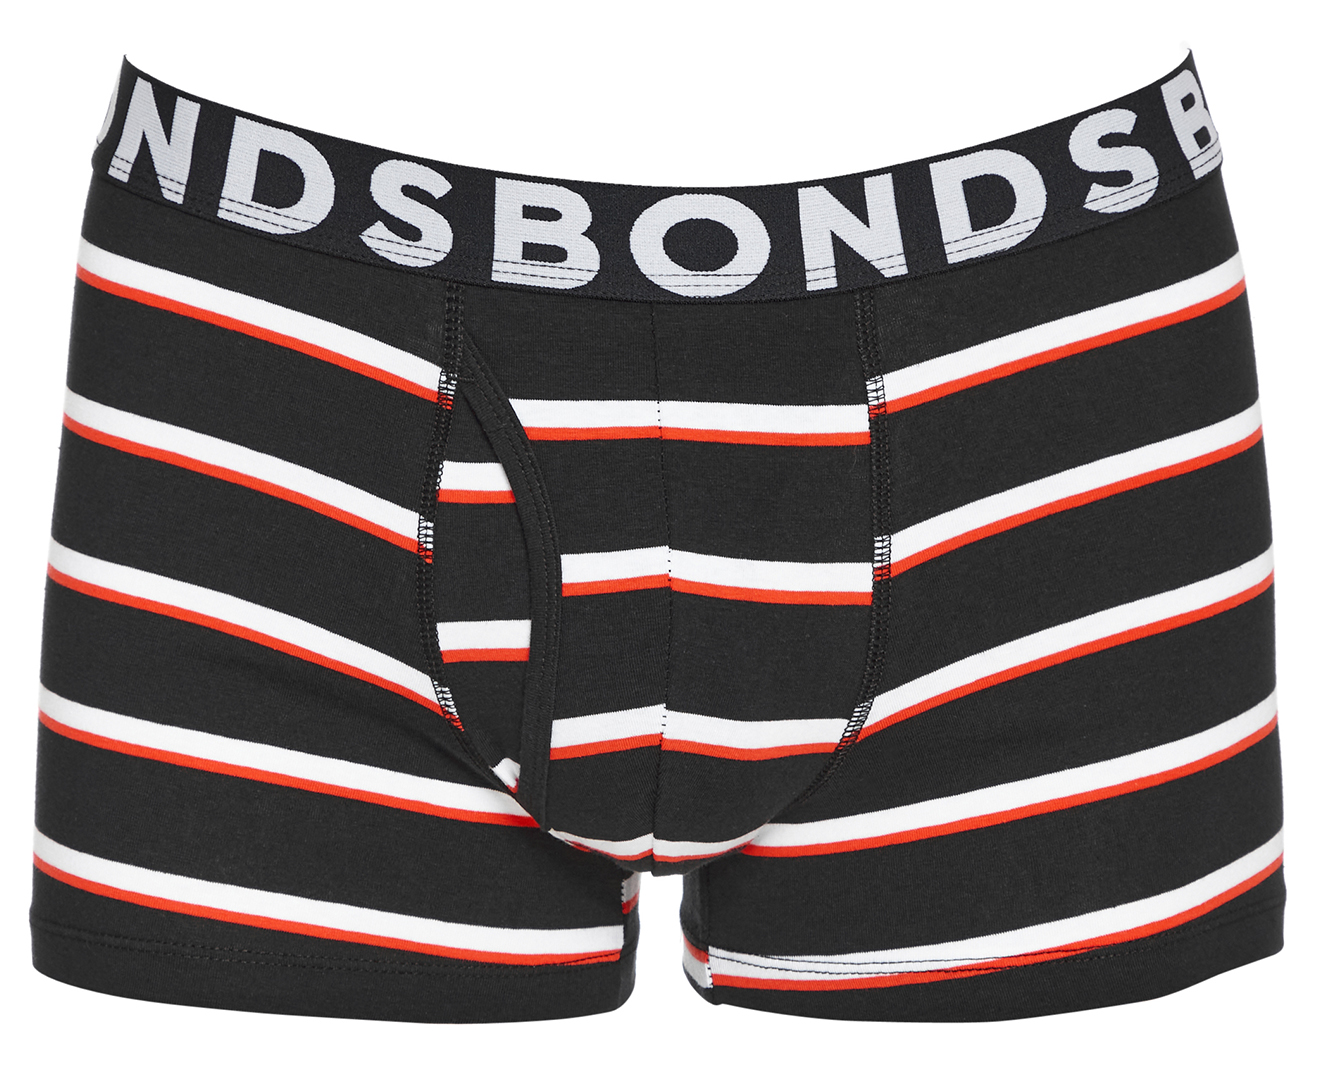 Bonds Men's Everyday Trunks 3-Pack - Assorted (Pack 02) | Catch.com.au